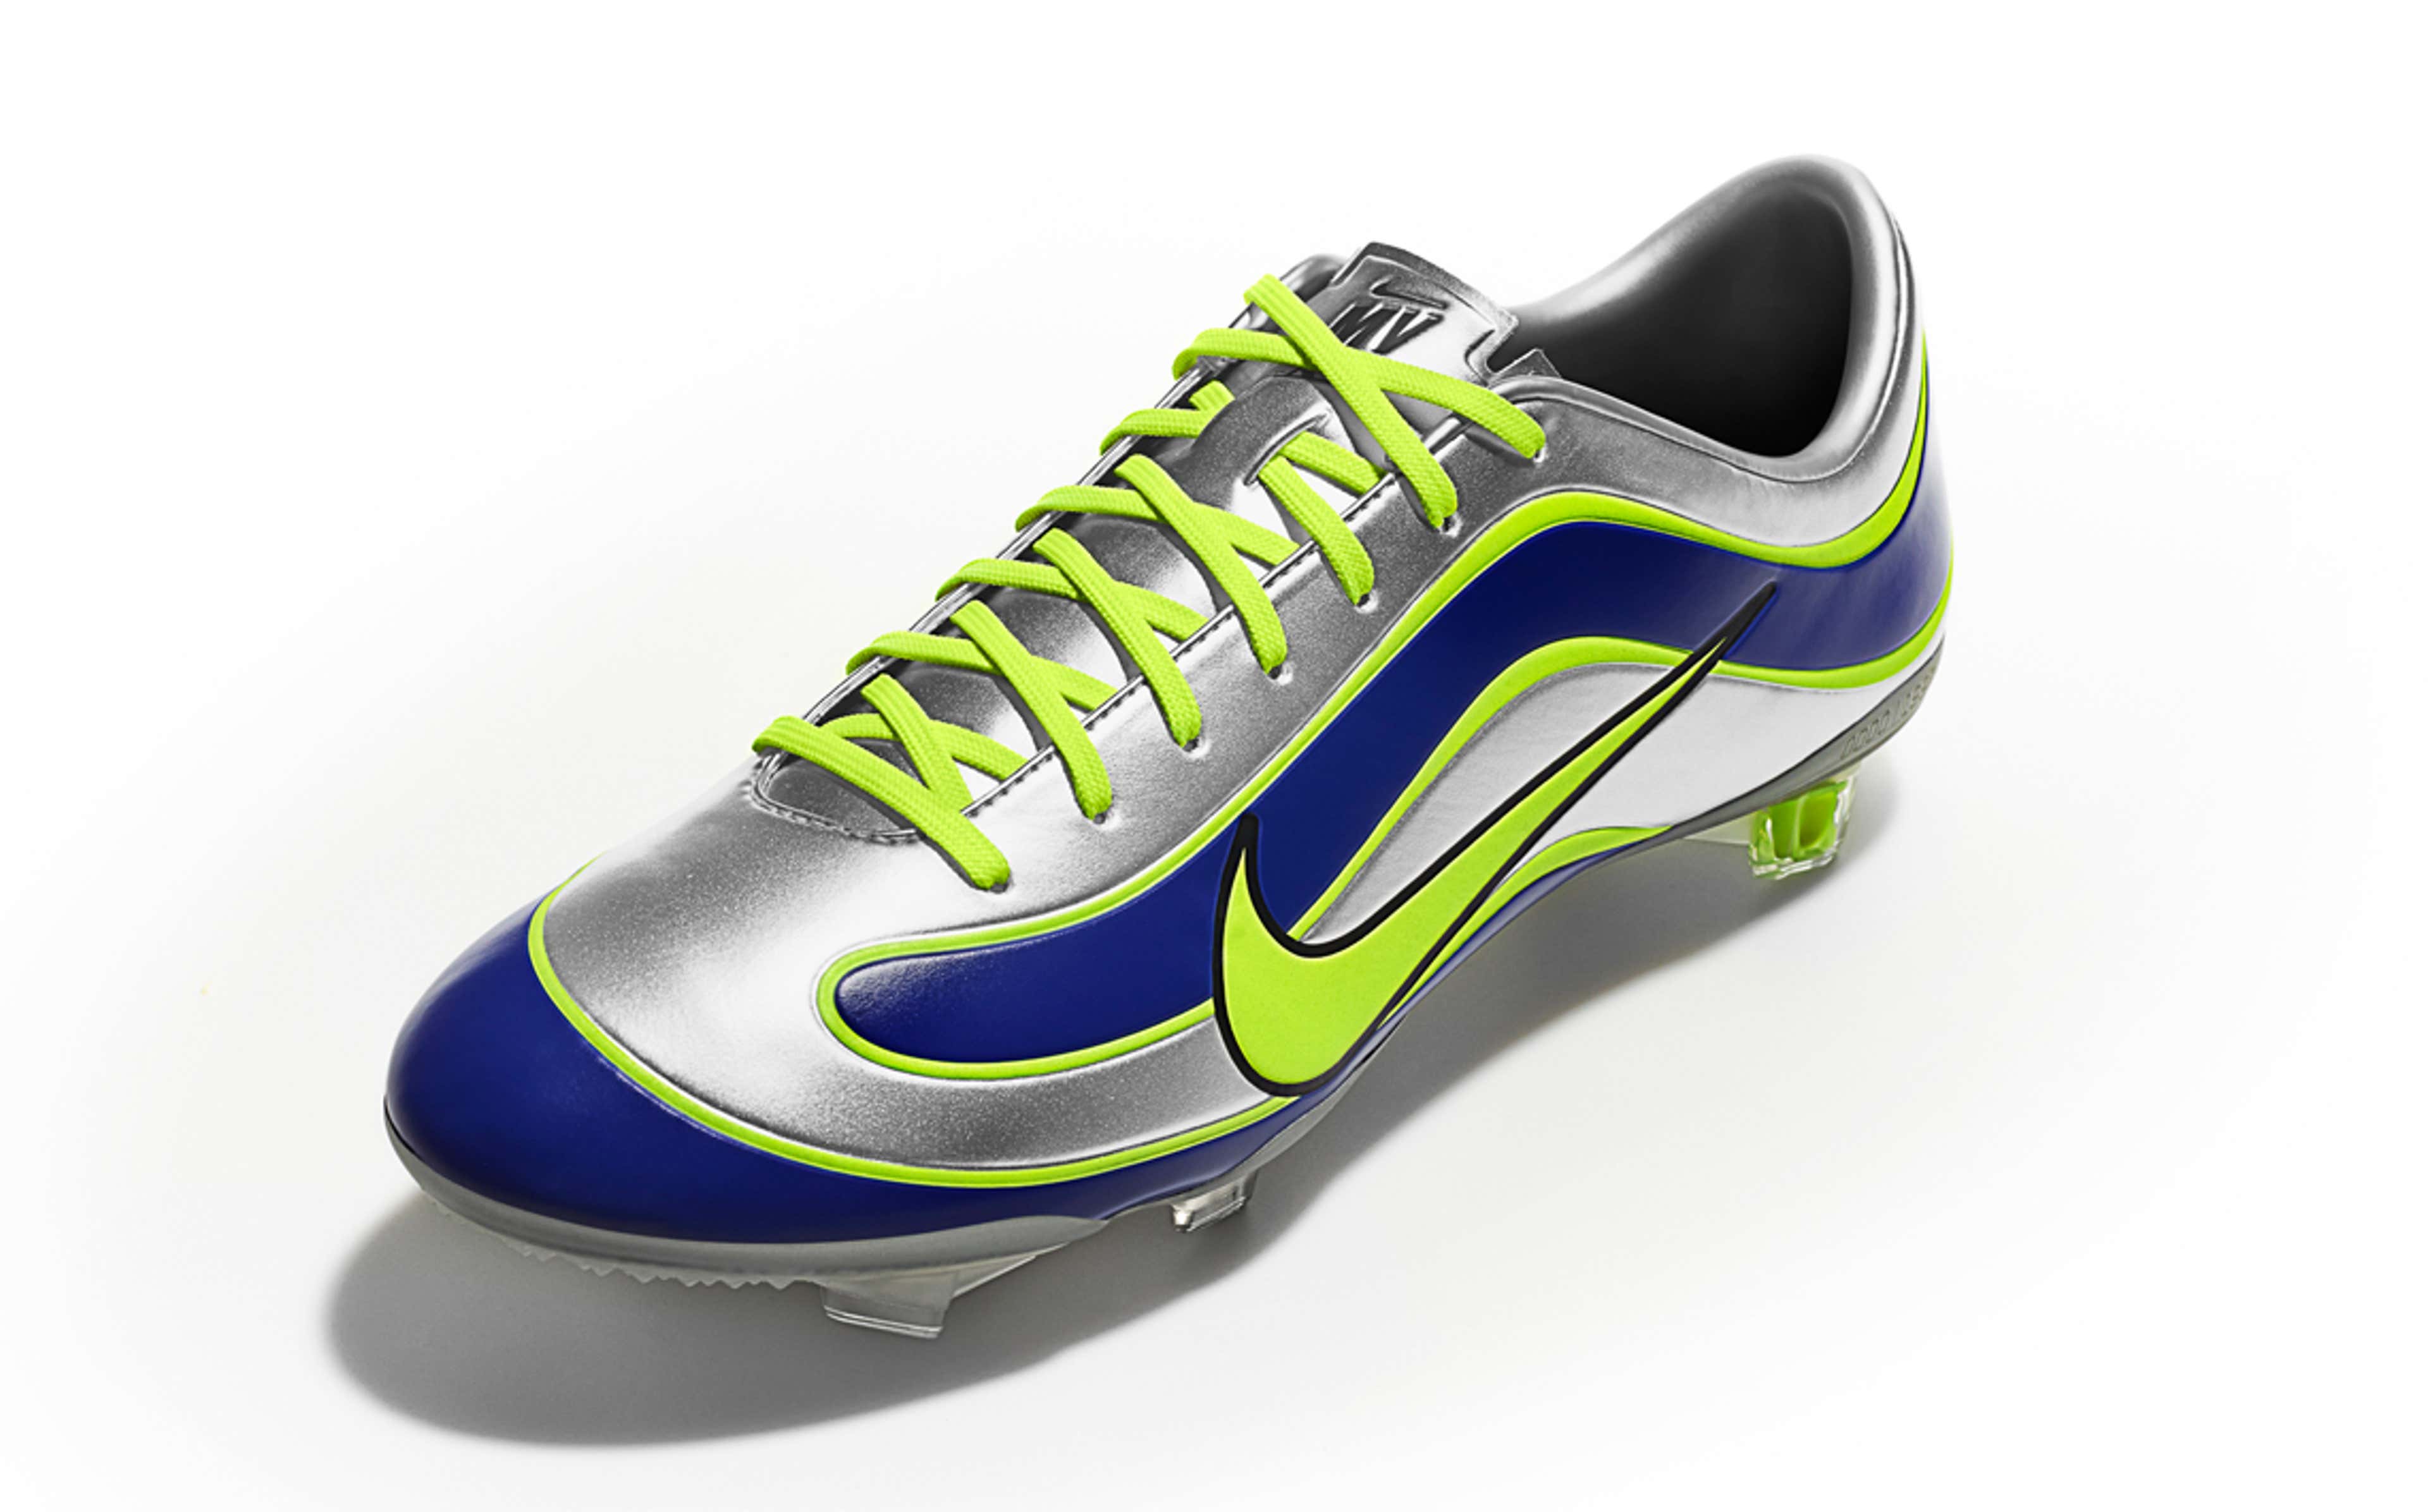 Nike celebra 15 años de Mercurial, los tacos diseñados para Ronaldo Nazario | Goal.com